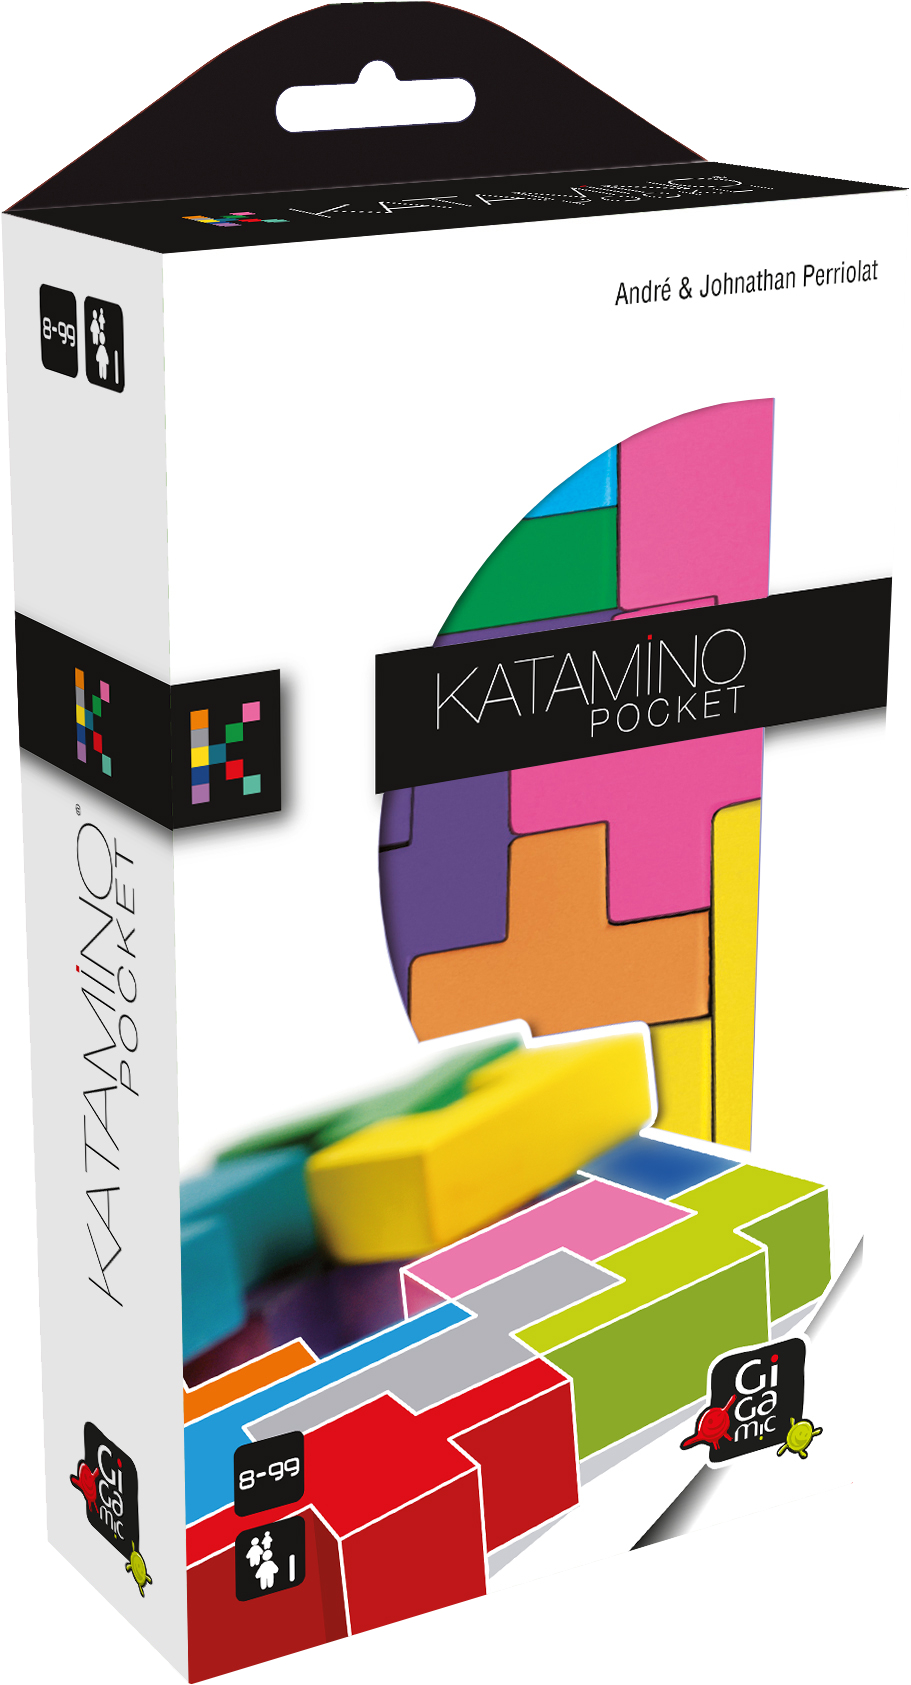 Katamino – Child's Play